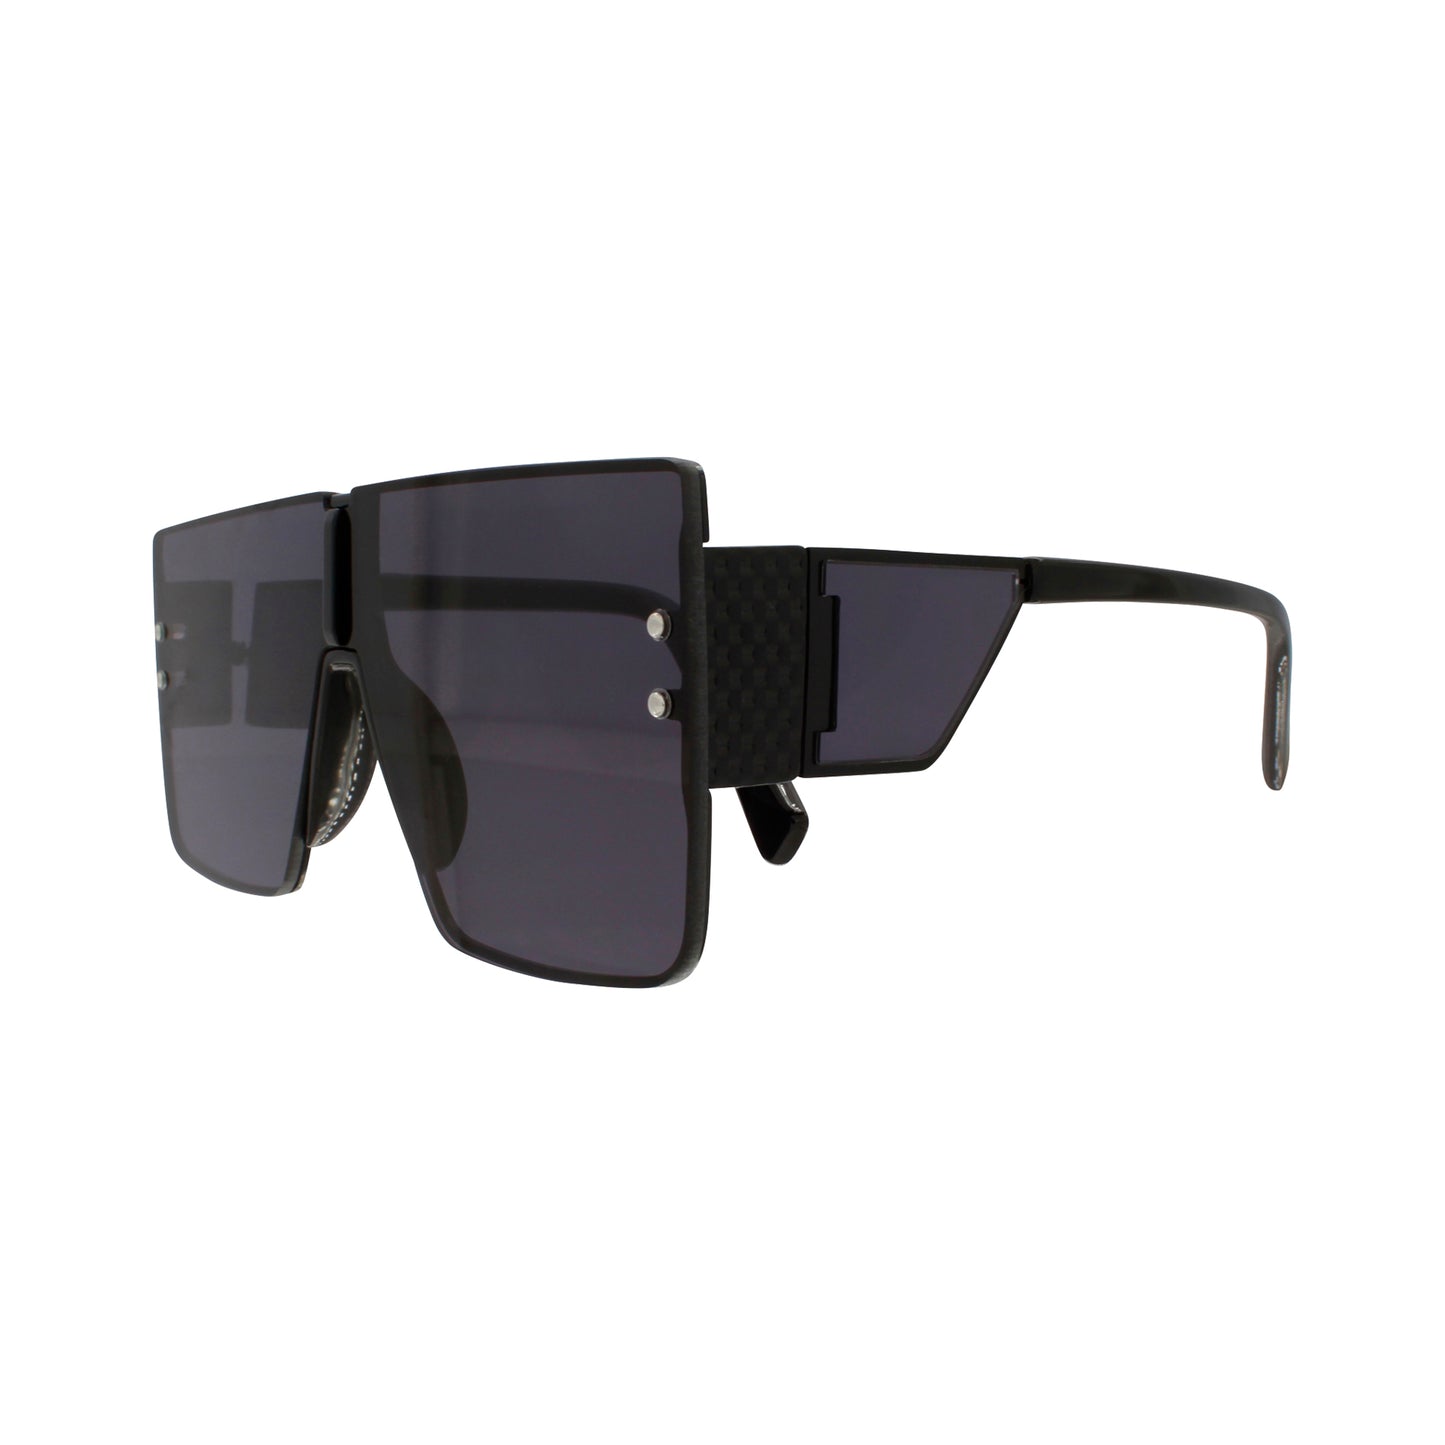 Gafas de sol Scarlet Black Protección UV400